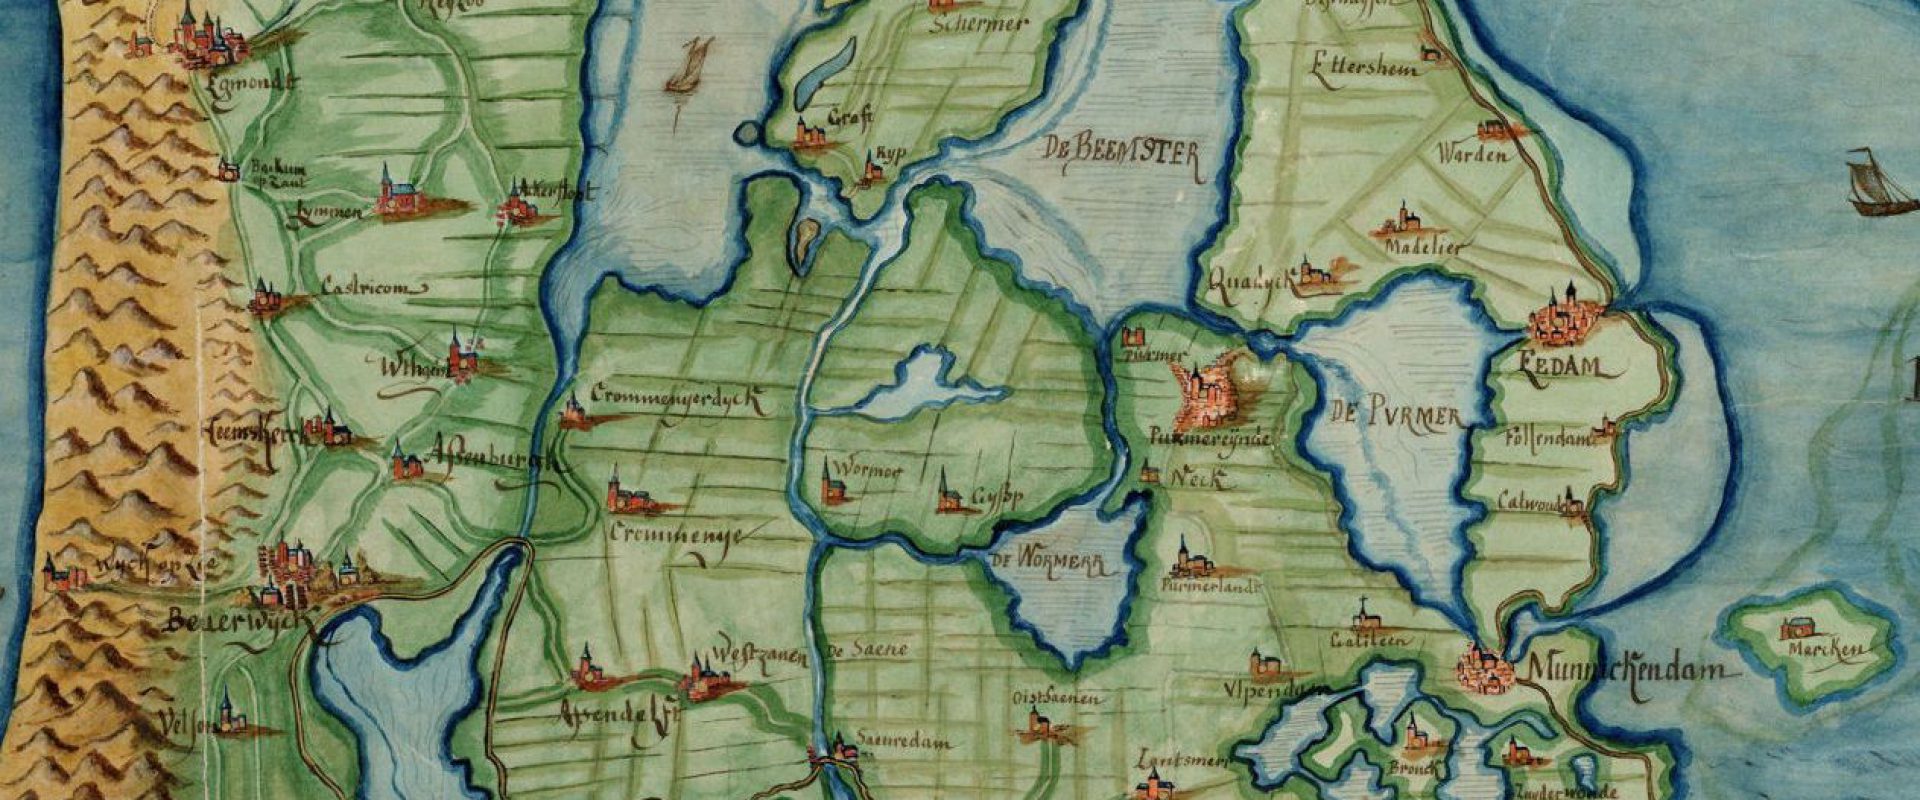 kaart Holland 1573 naar C Sgroten